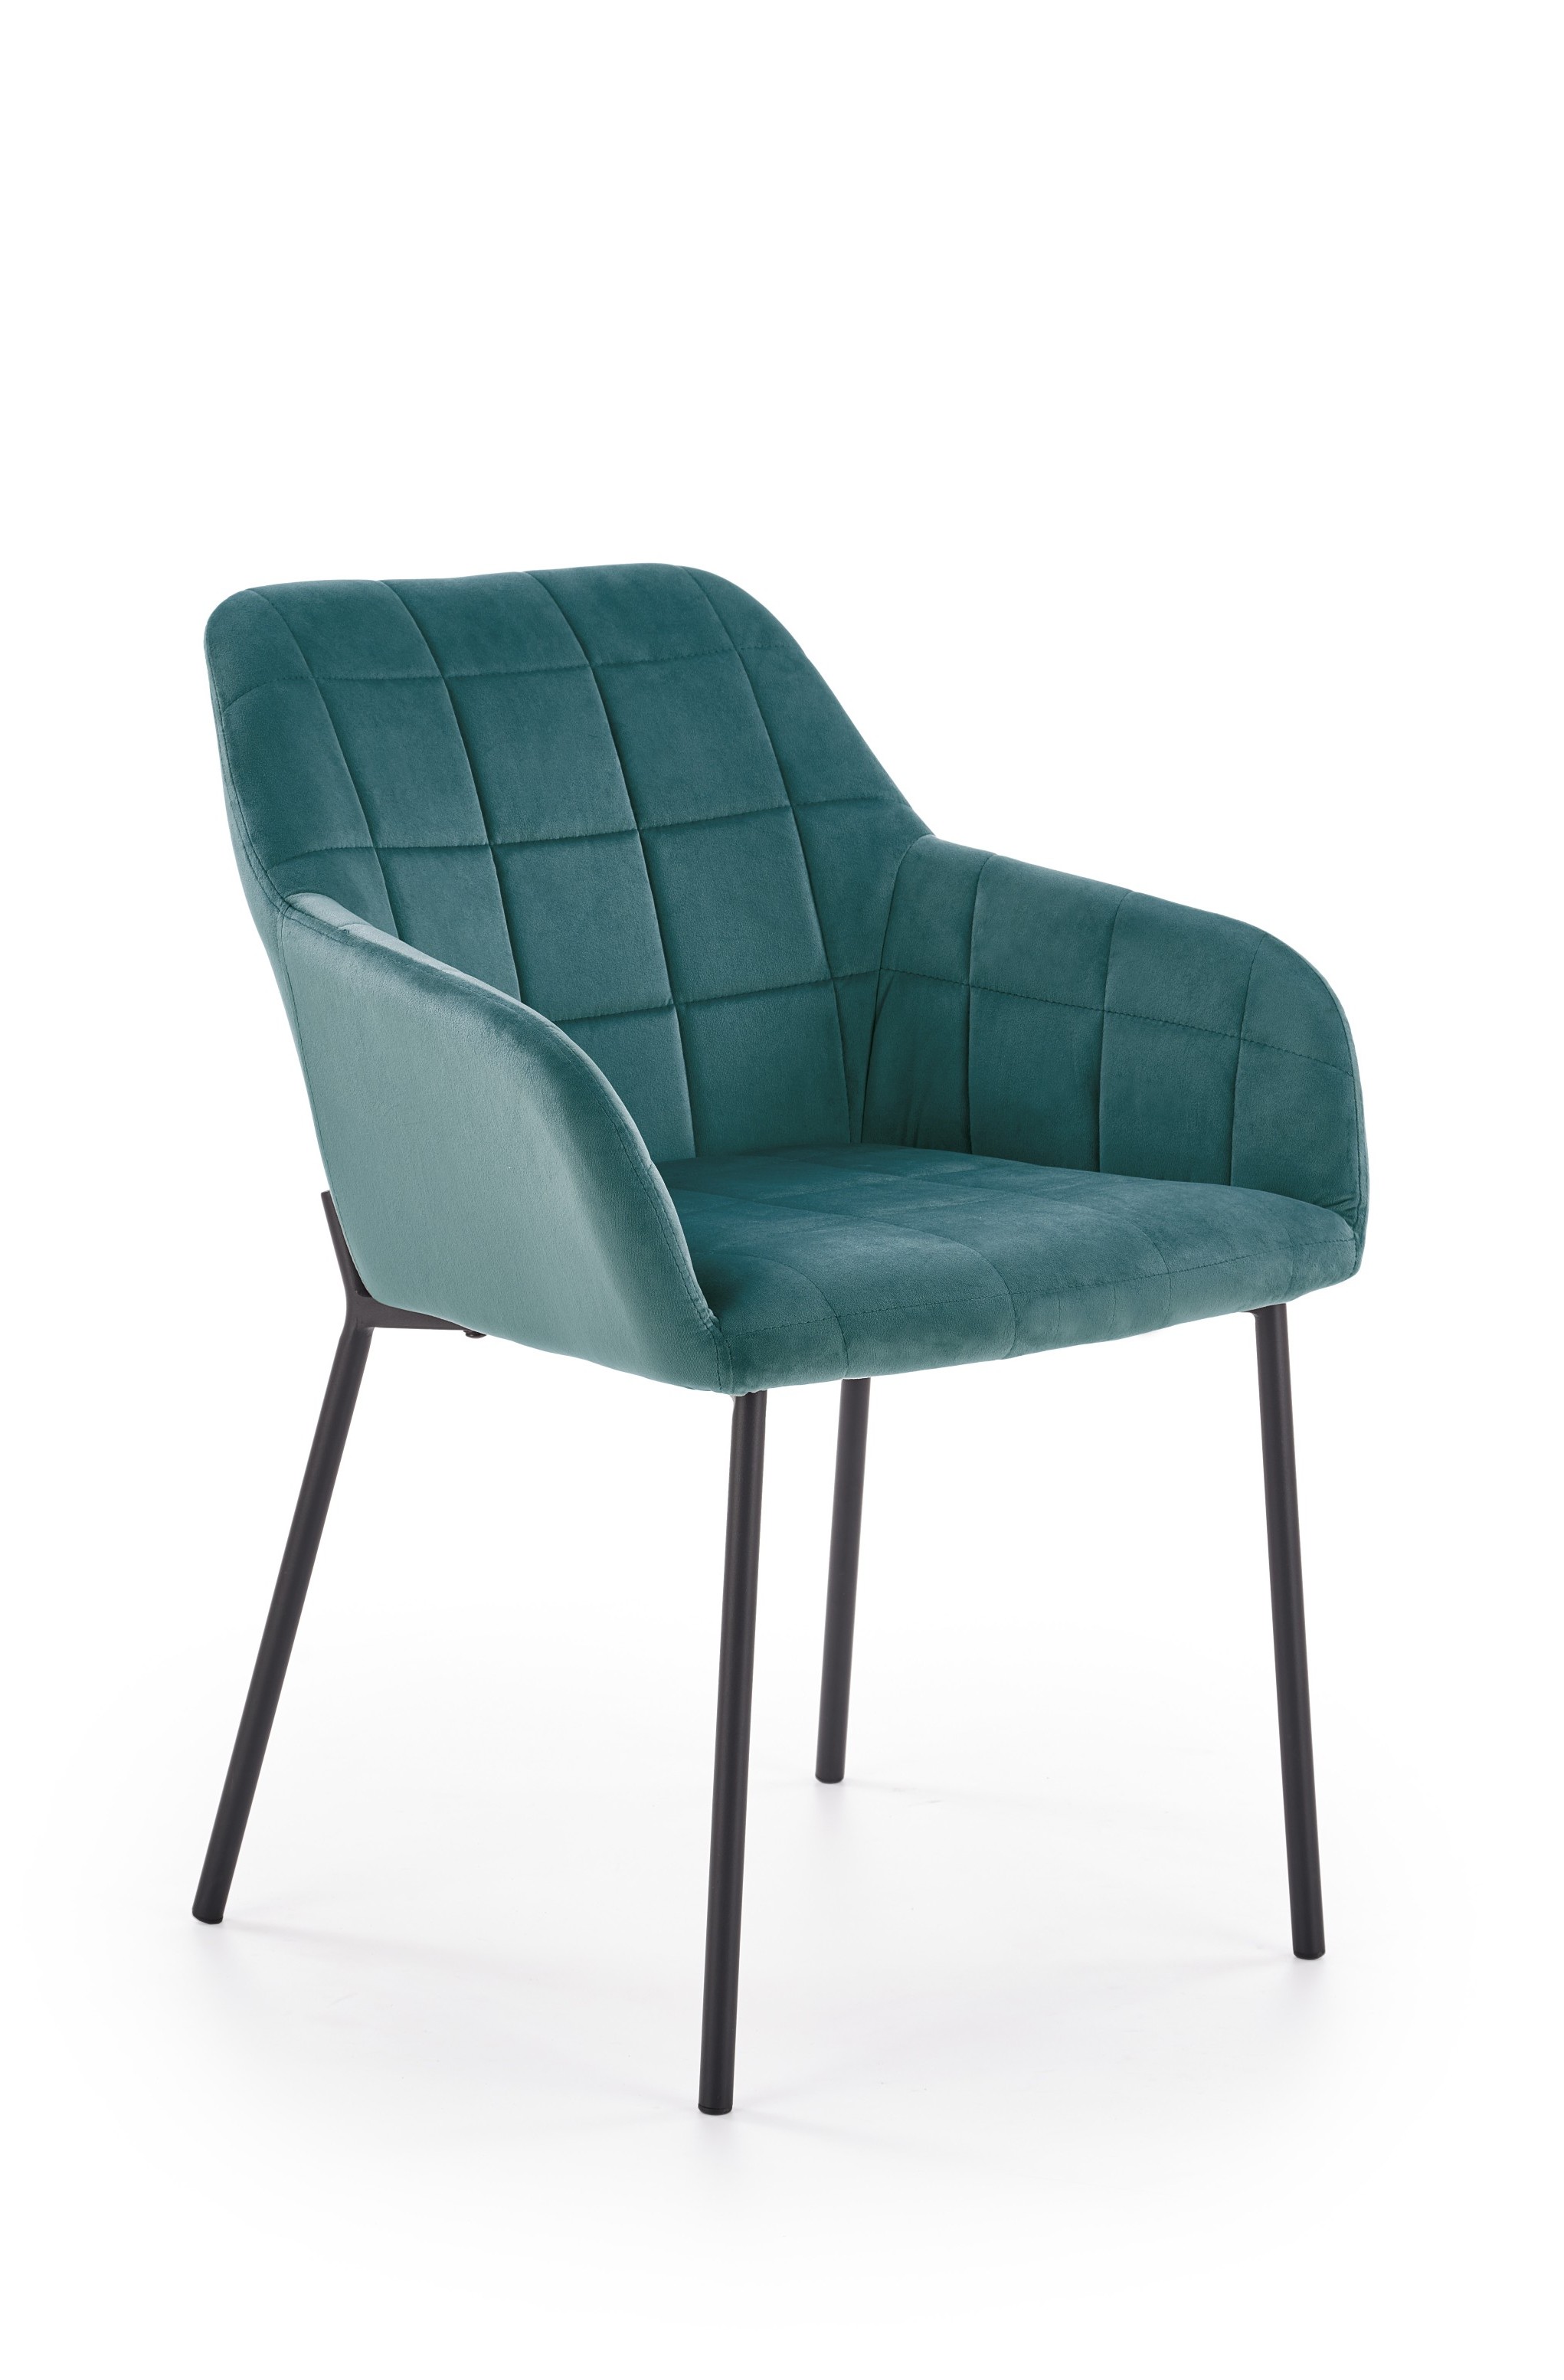 K305 szék - fekete / sötétzöld k305 Židle Černá / tmavě zelená